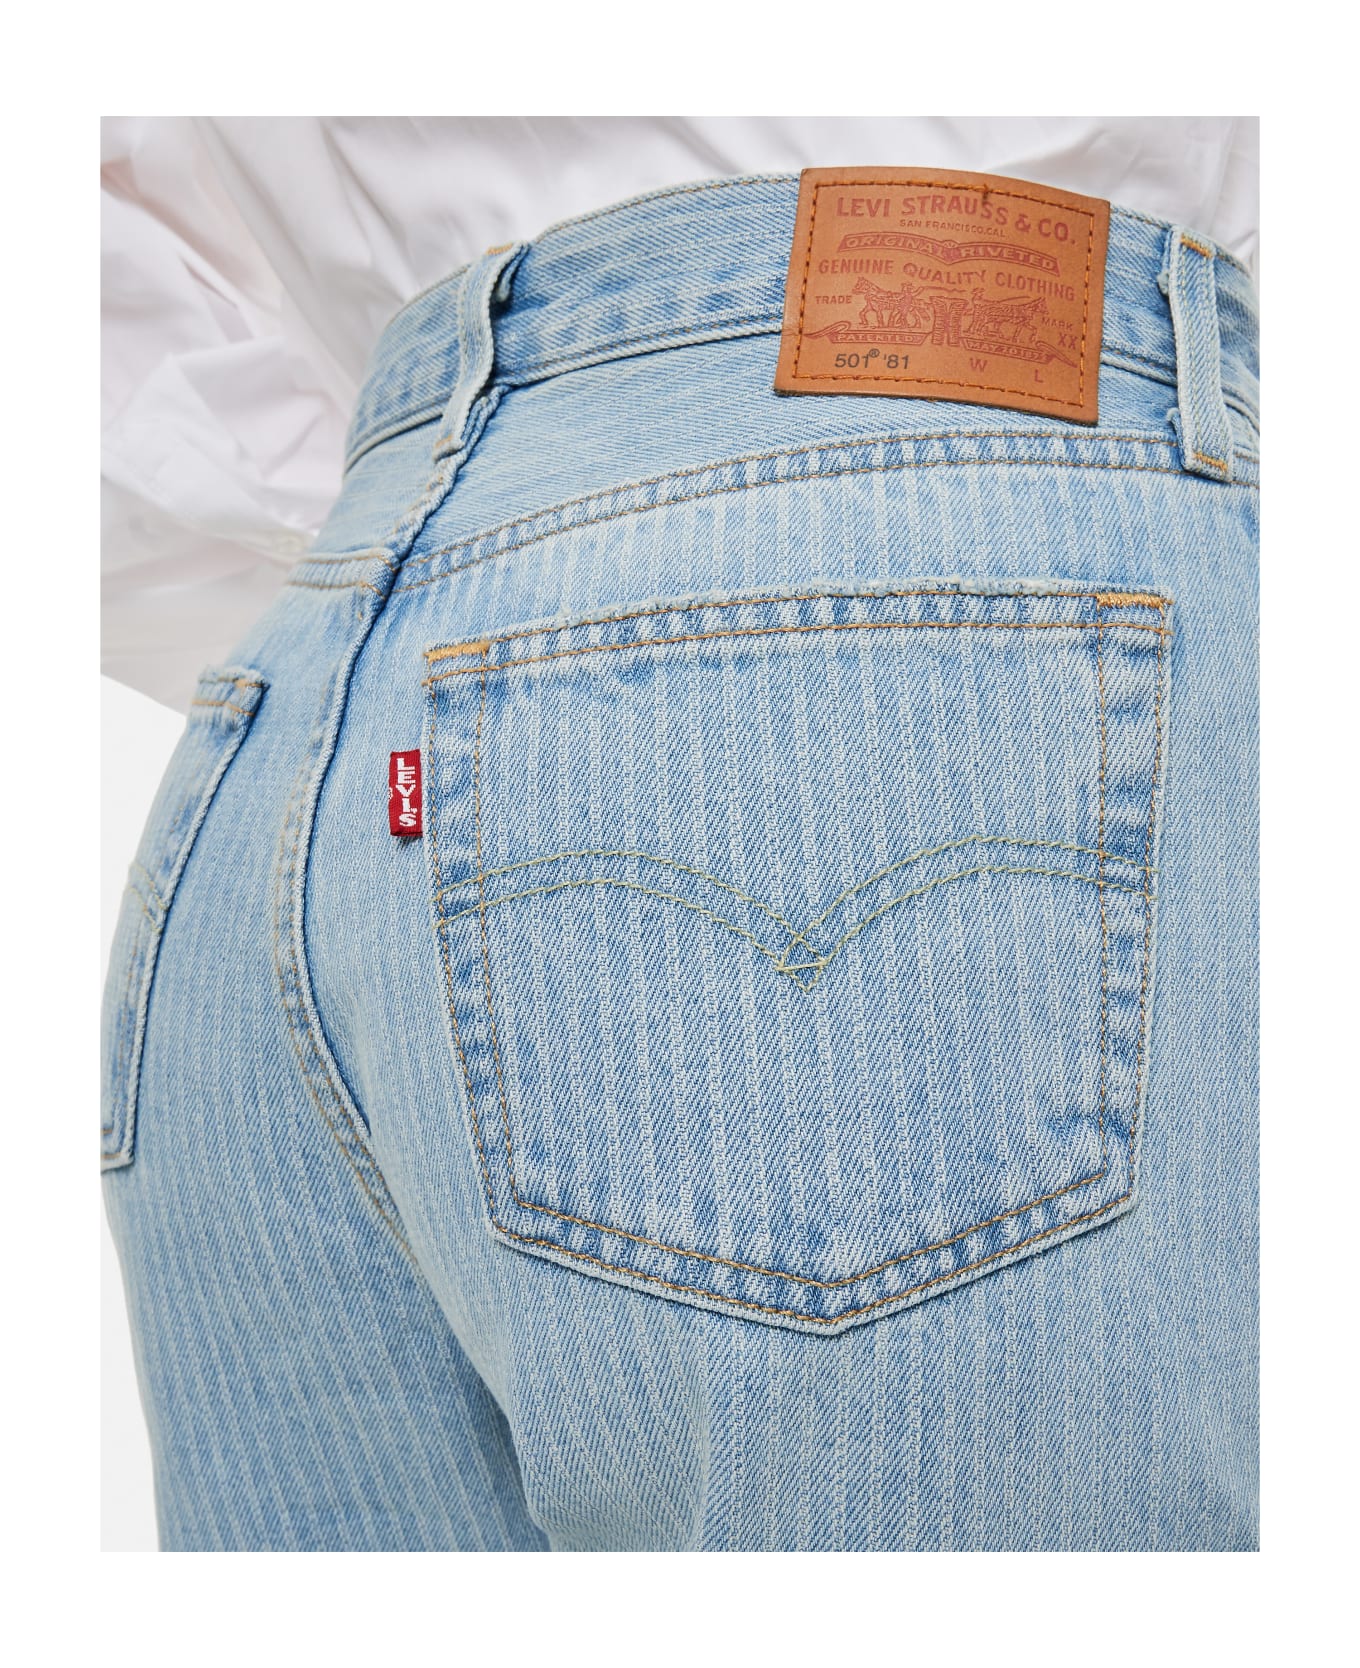 Levi's 501'81 Jeans - Blue